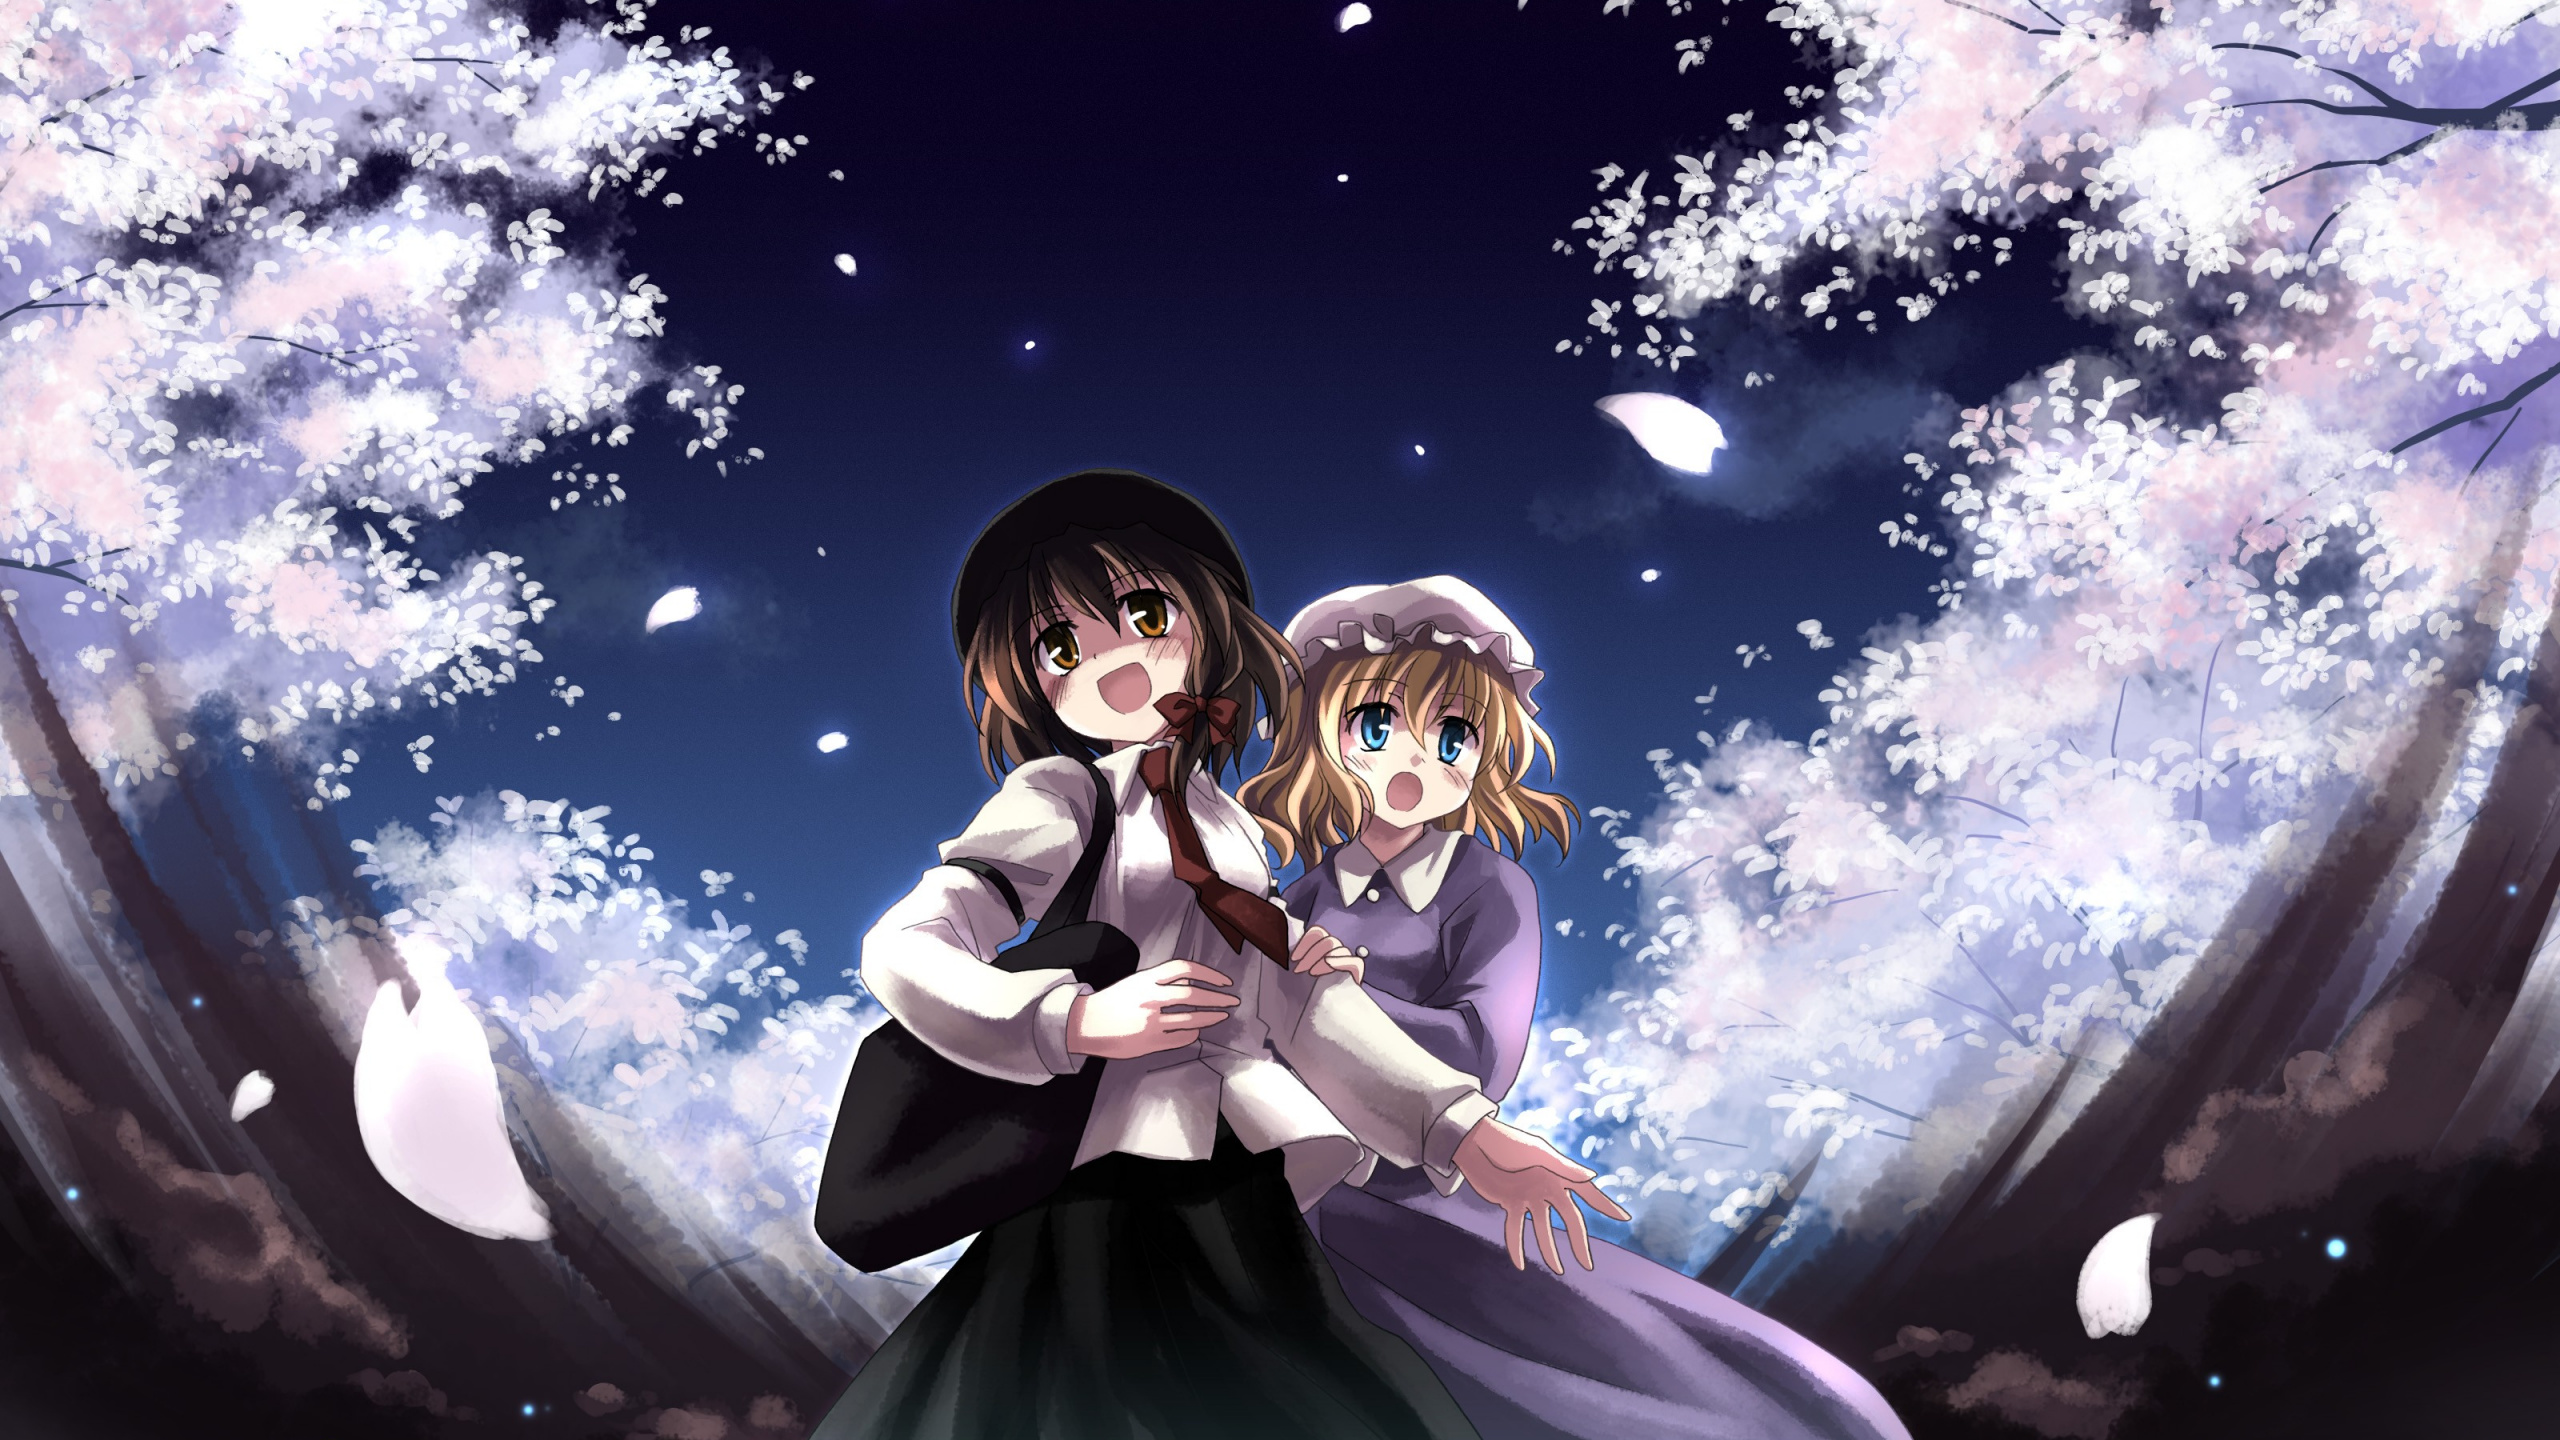 Mädchen im Weißen Kleid Anime-Charakter. Wallpaper in 2560x1440 Resolution